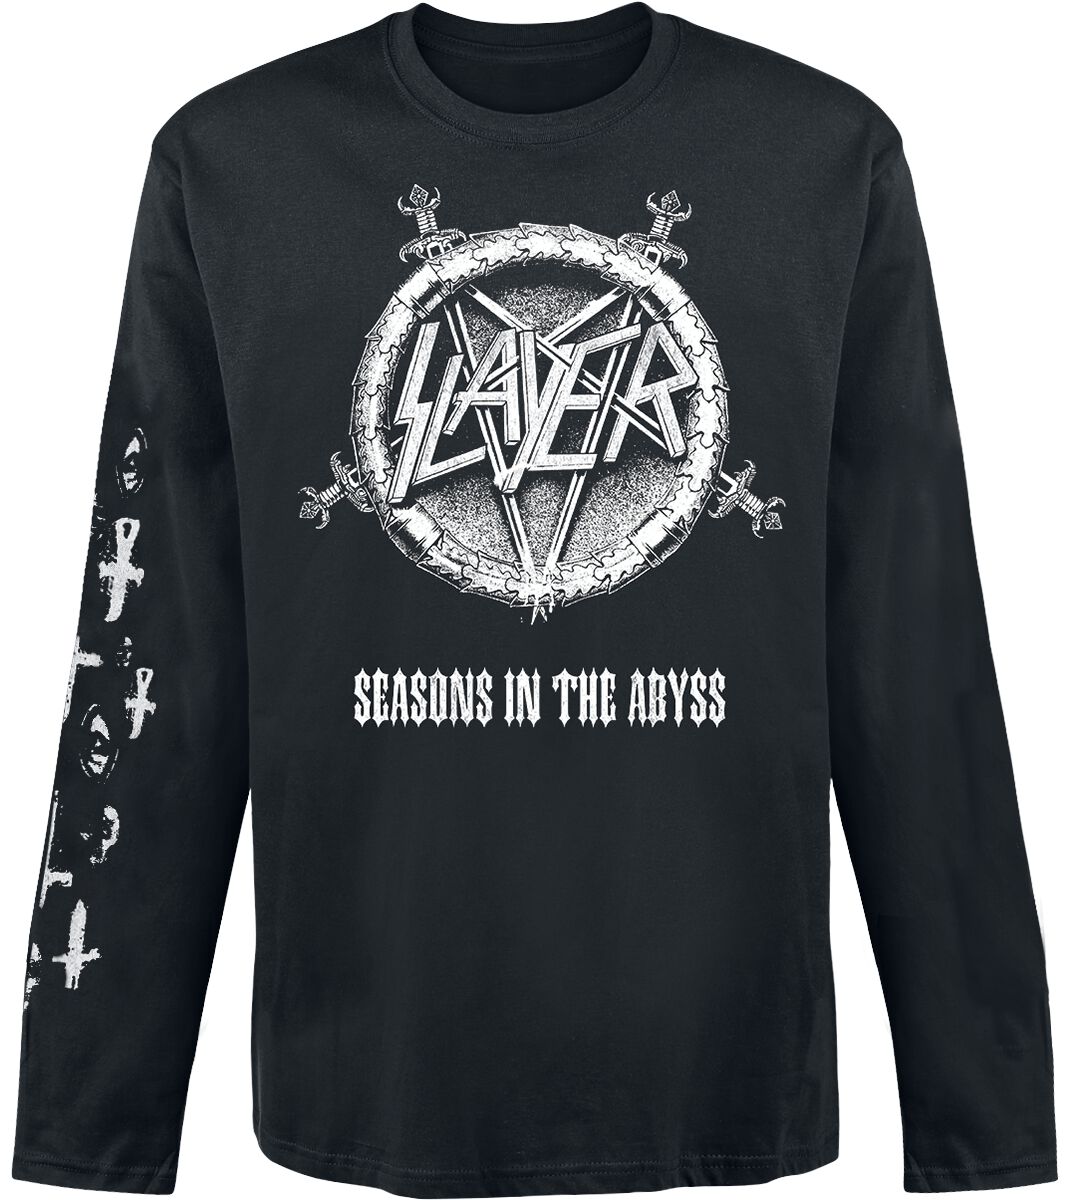 Slayer Langarmshirt - Seasons In The Abyss - S bis XXL - für Männer - Größe S - schwarz  - Lizenziertes Merchandise!